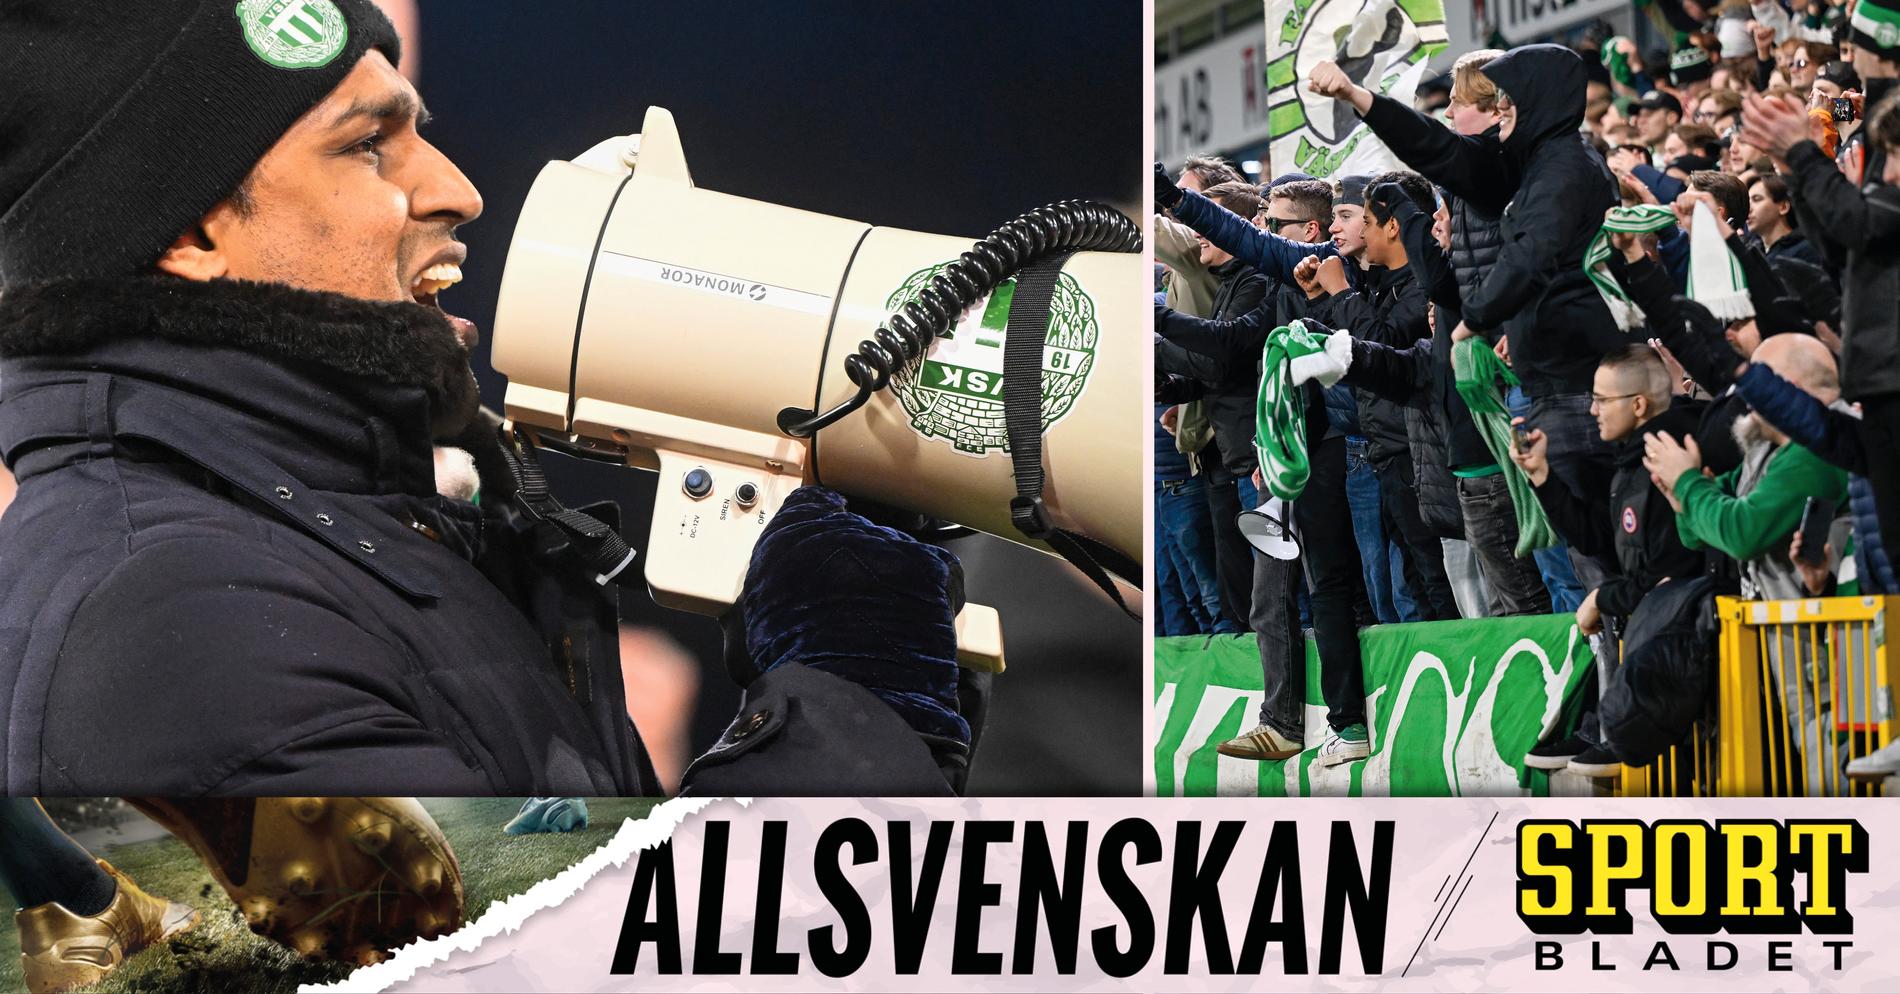 Kalmar FF: Kalle Karlssons efterlängtade jubel: ”Fick gnugga sig i ögonen” • Podden Sportbladet Allsvenskan med nytt avsnitt